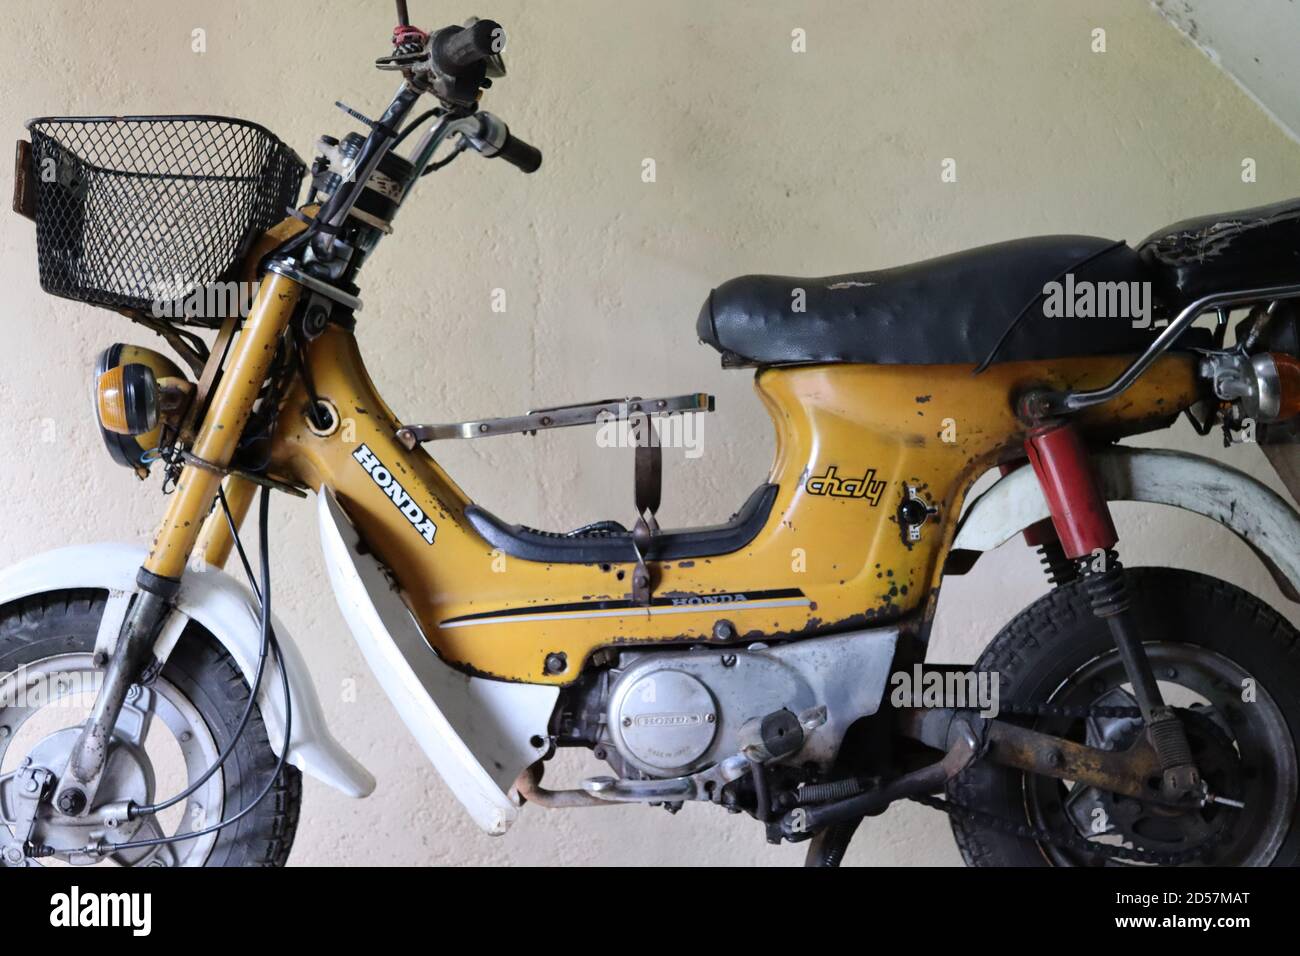 In ottime condizioni di corsa e originalmente dal Giappone sotto il marchio Honda e la serie di modello come Chaly questa moto fatta in 1984. Foto Stock